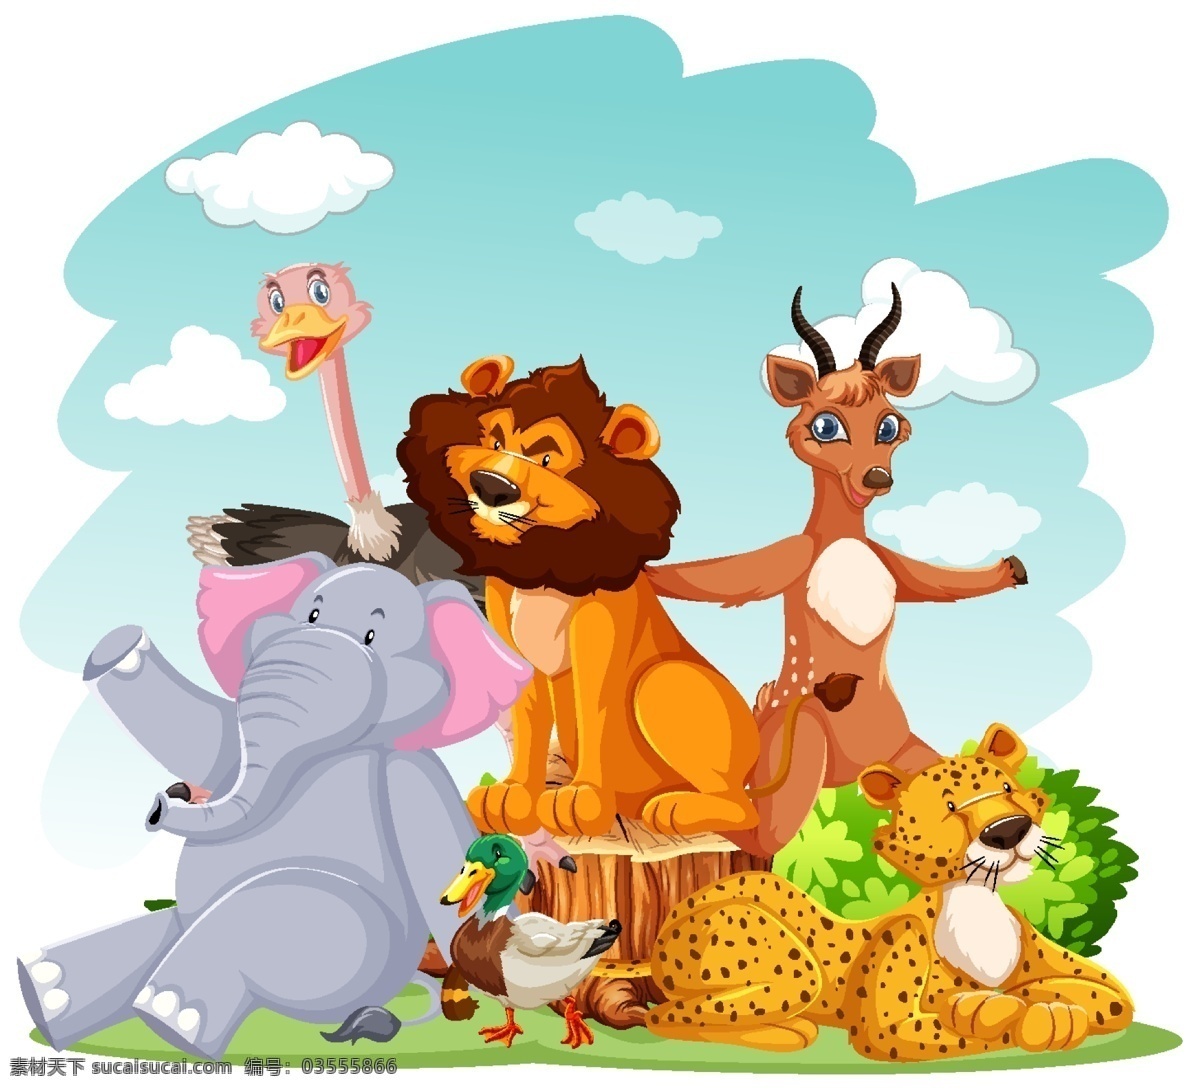 卡通动物图片 卡通动物 动物 动物世界 动物背景 动物底图 动物表演 动物展板 动物宣传画 可爱卡通动物 可爱动物 童话世界 动物王国 卡通动物配图 儿童绘 卡通动物生物 卡通设计